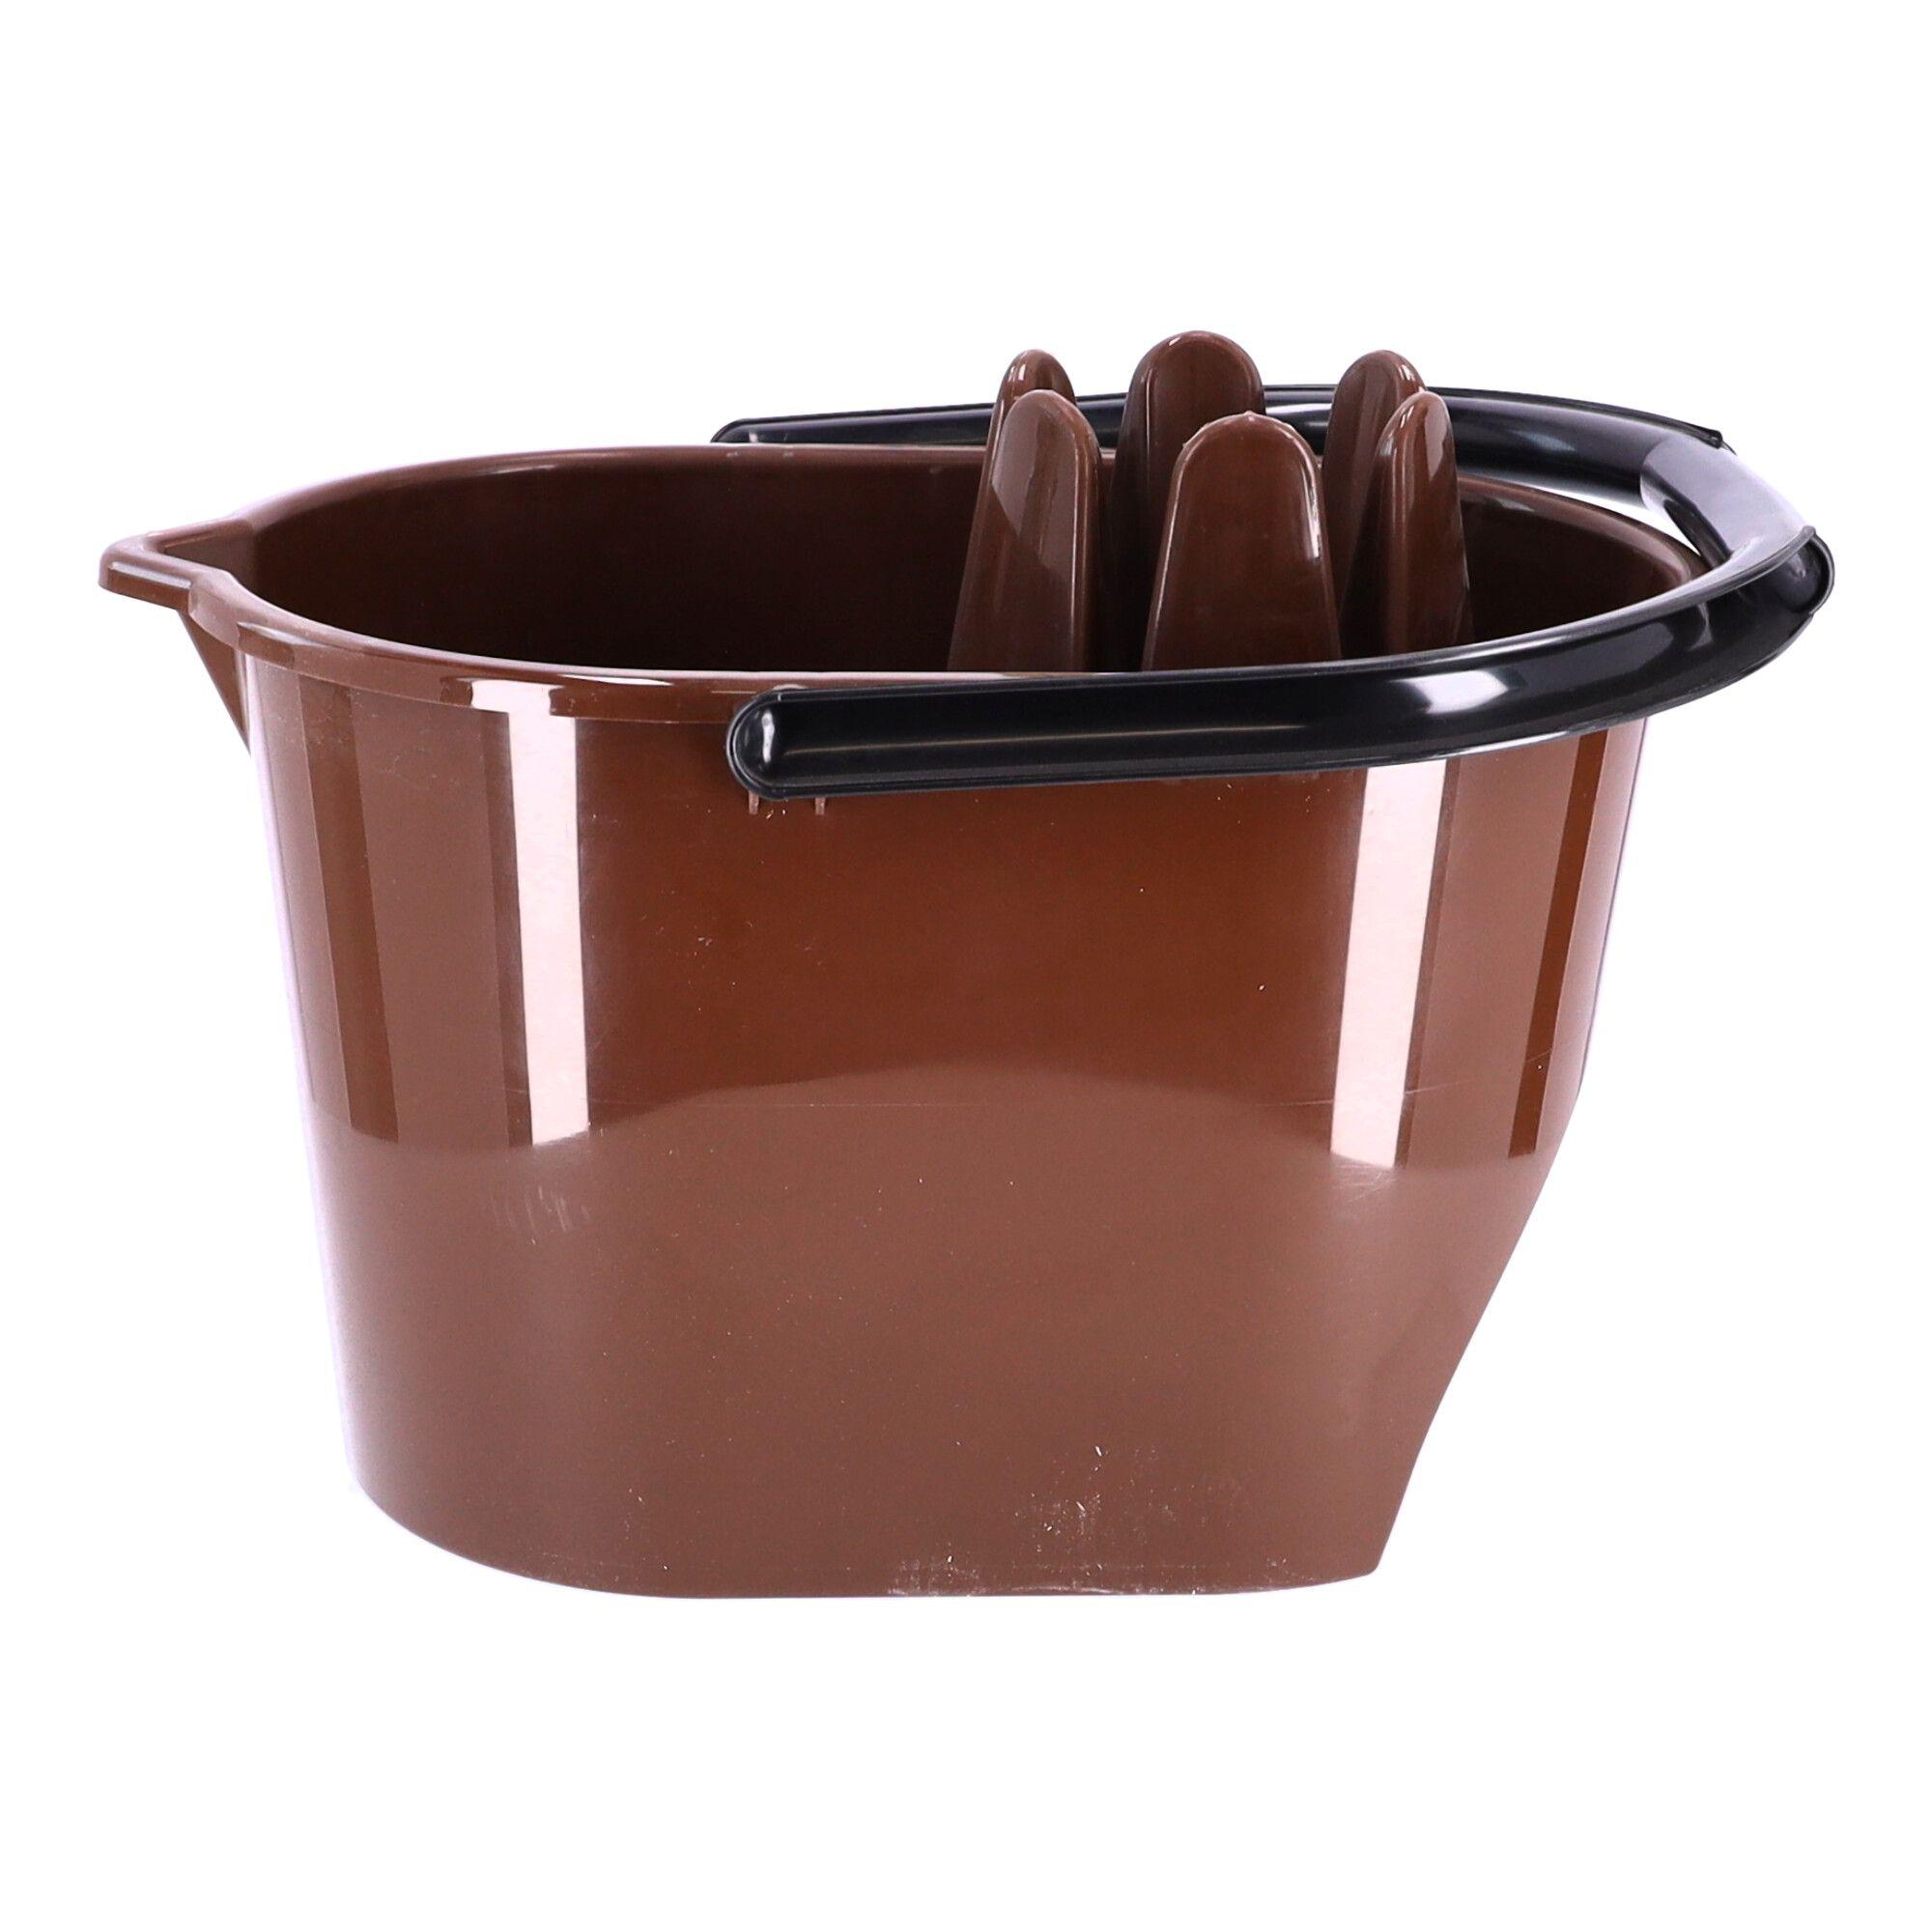 Onafhankelijk regelmatig meloen Mop bucket with squeezer, POLISH PRODUCT - brown